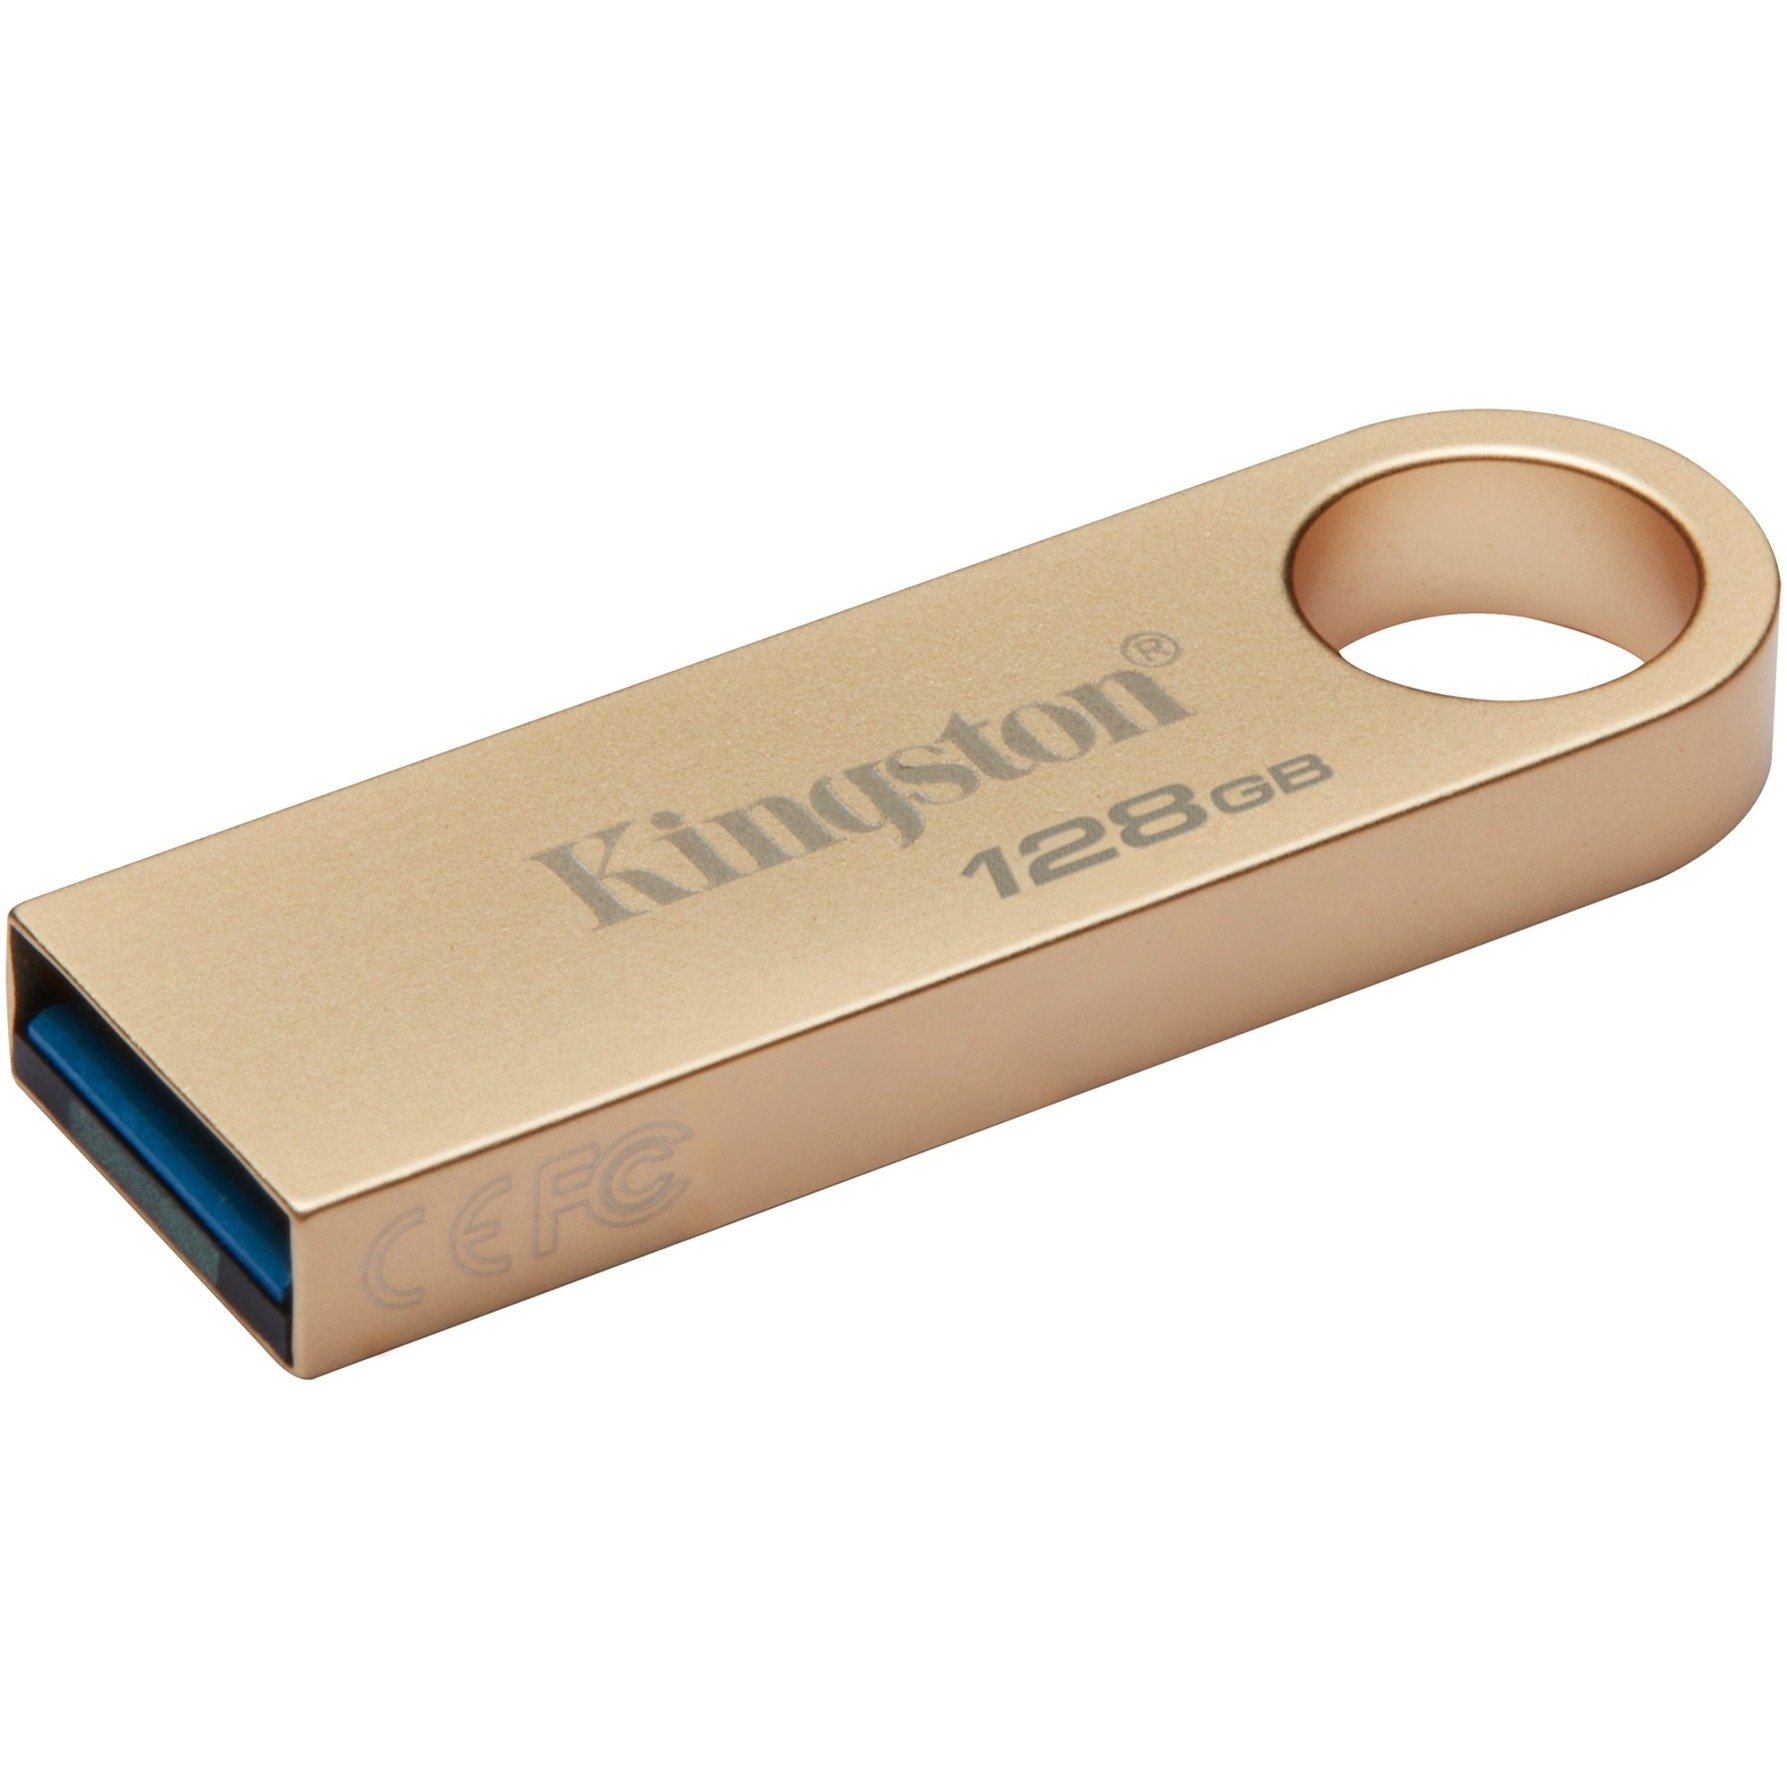 DataTraveler SE9 G3 128 GB, USB-Stick von Kingston